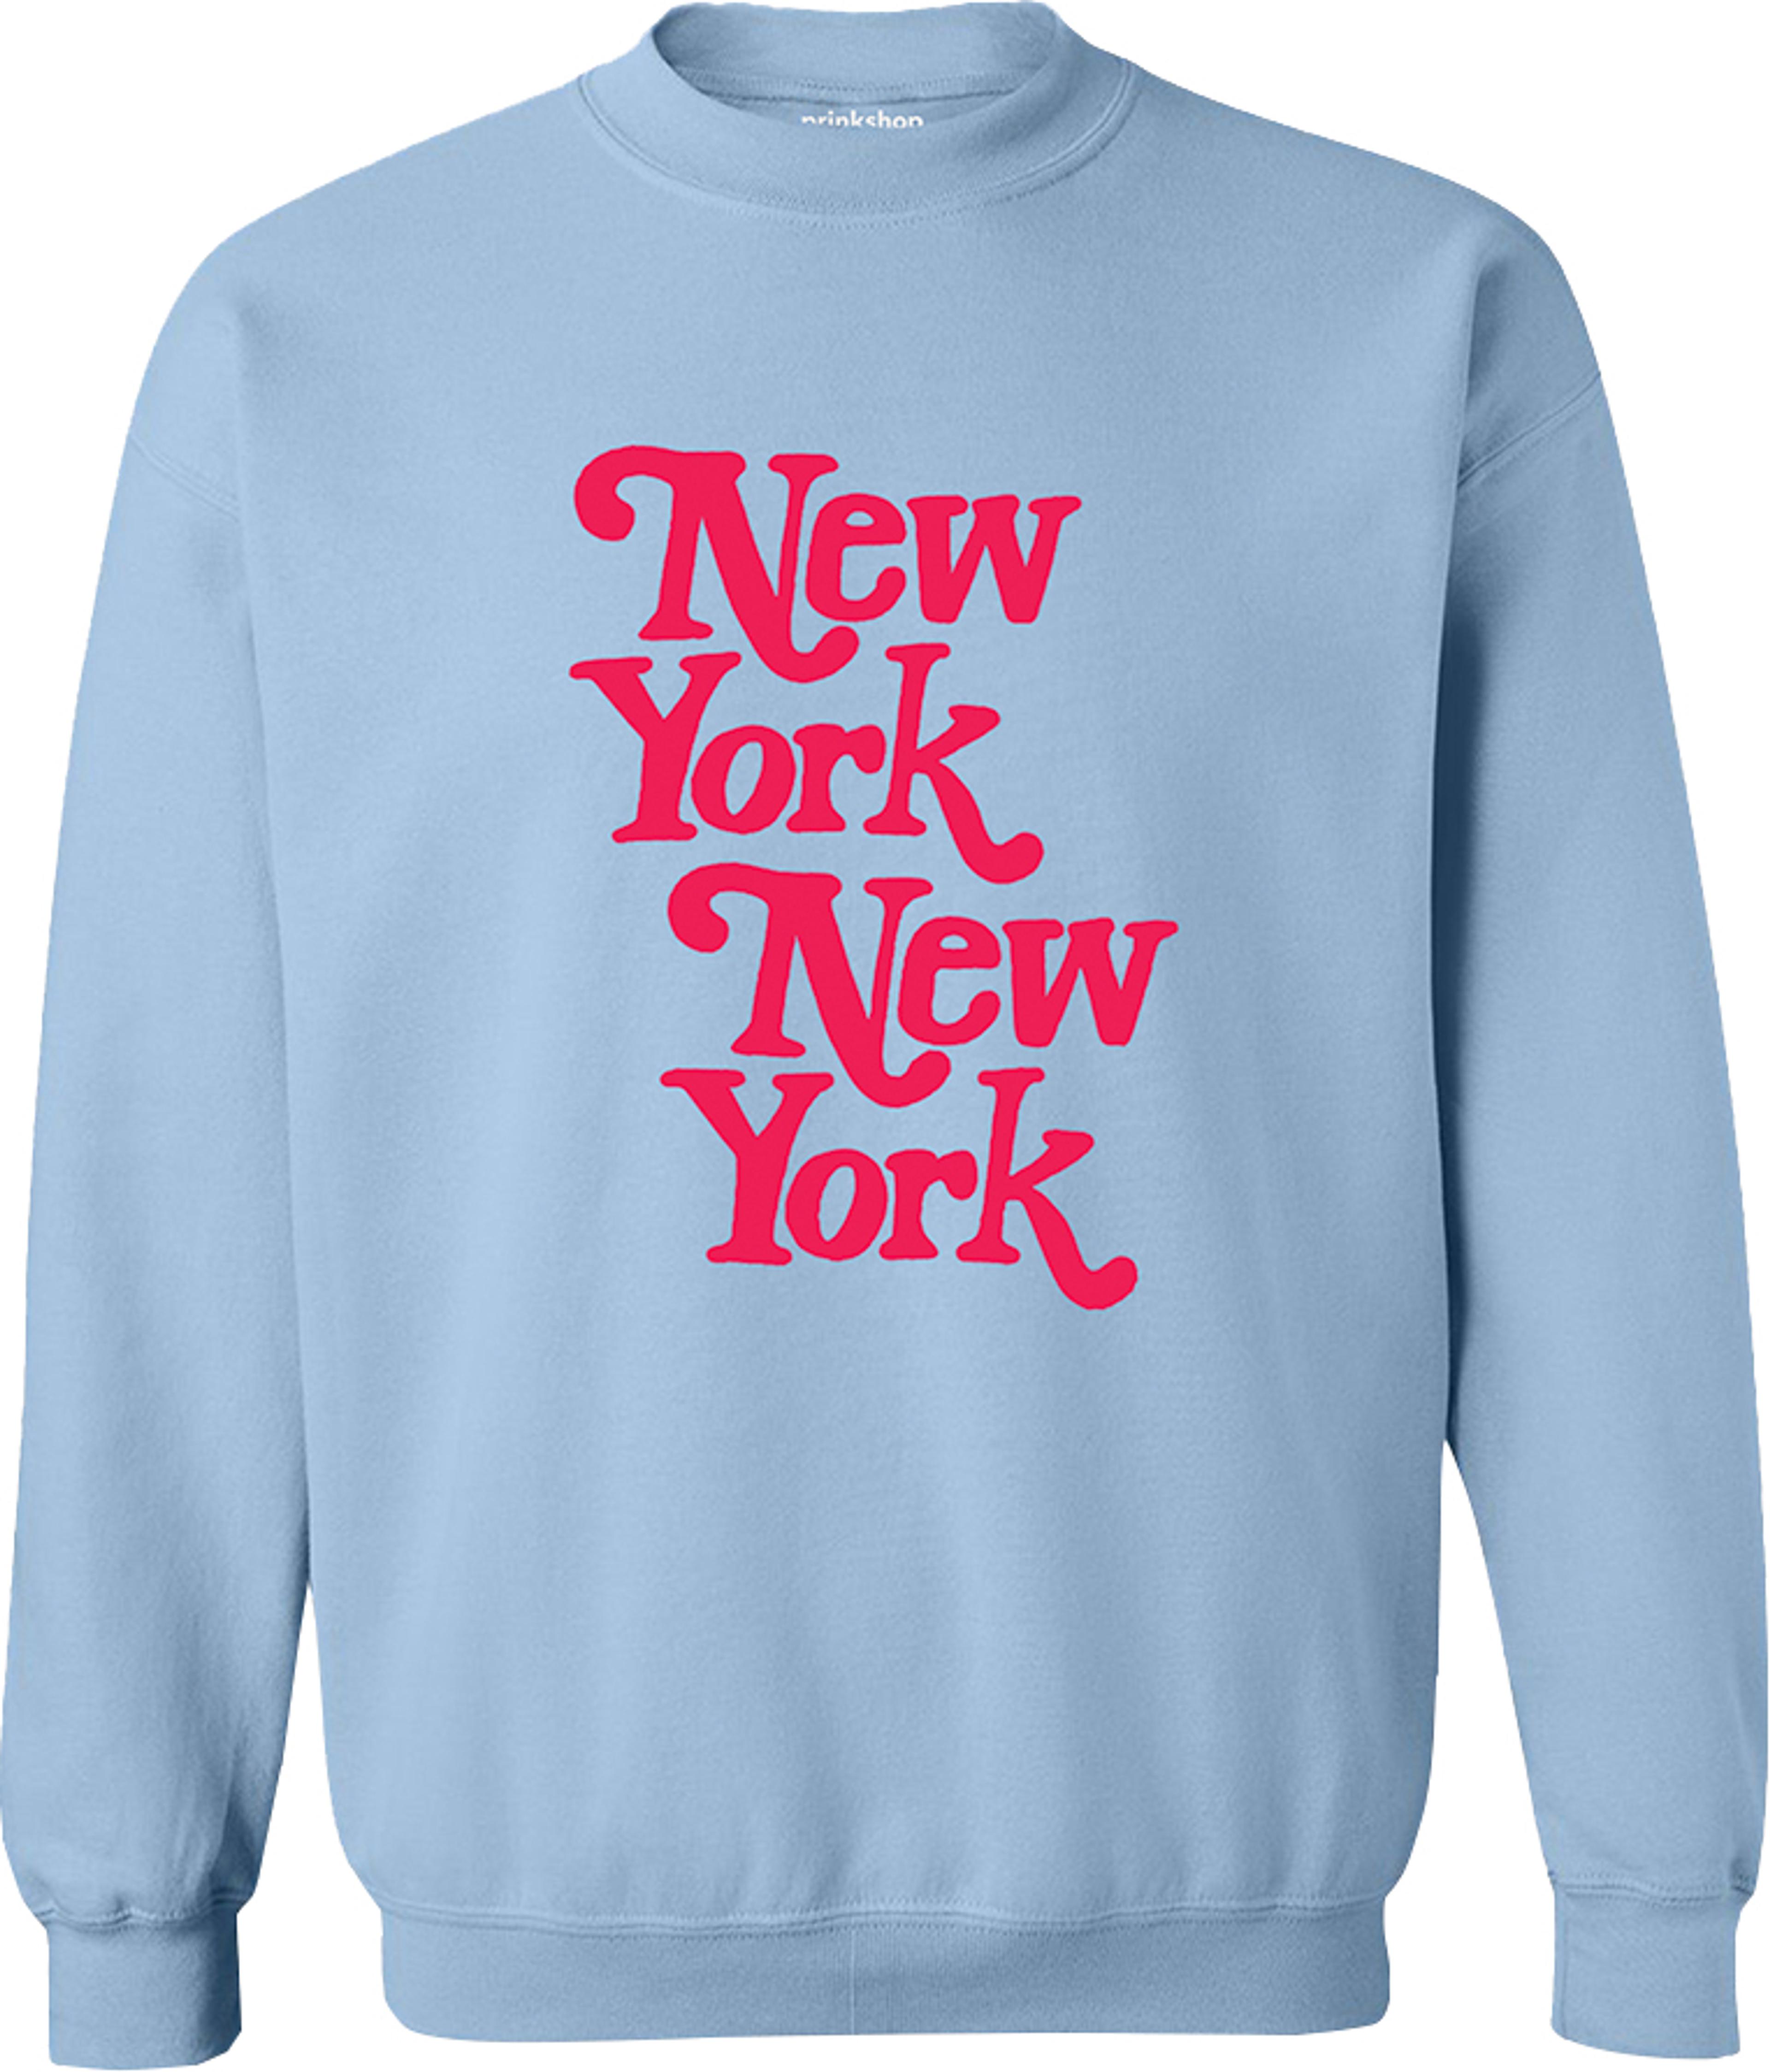 New York New York sweatshirt